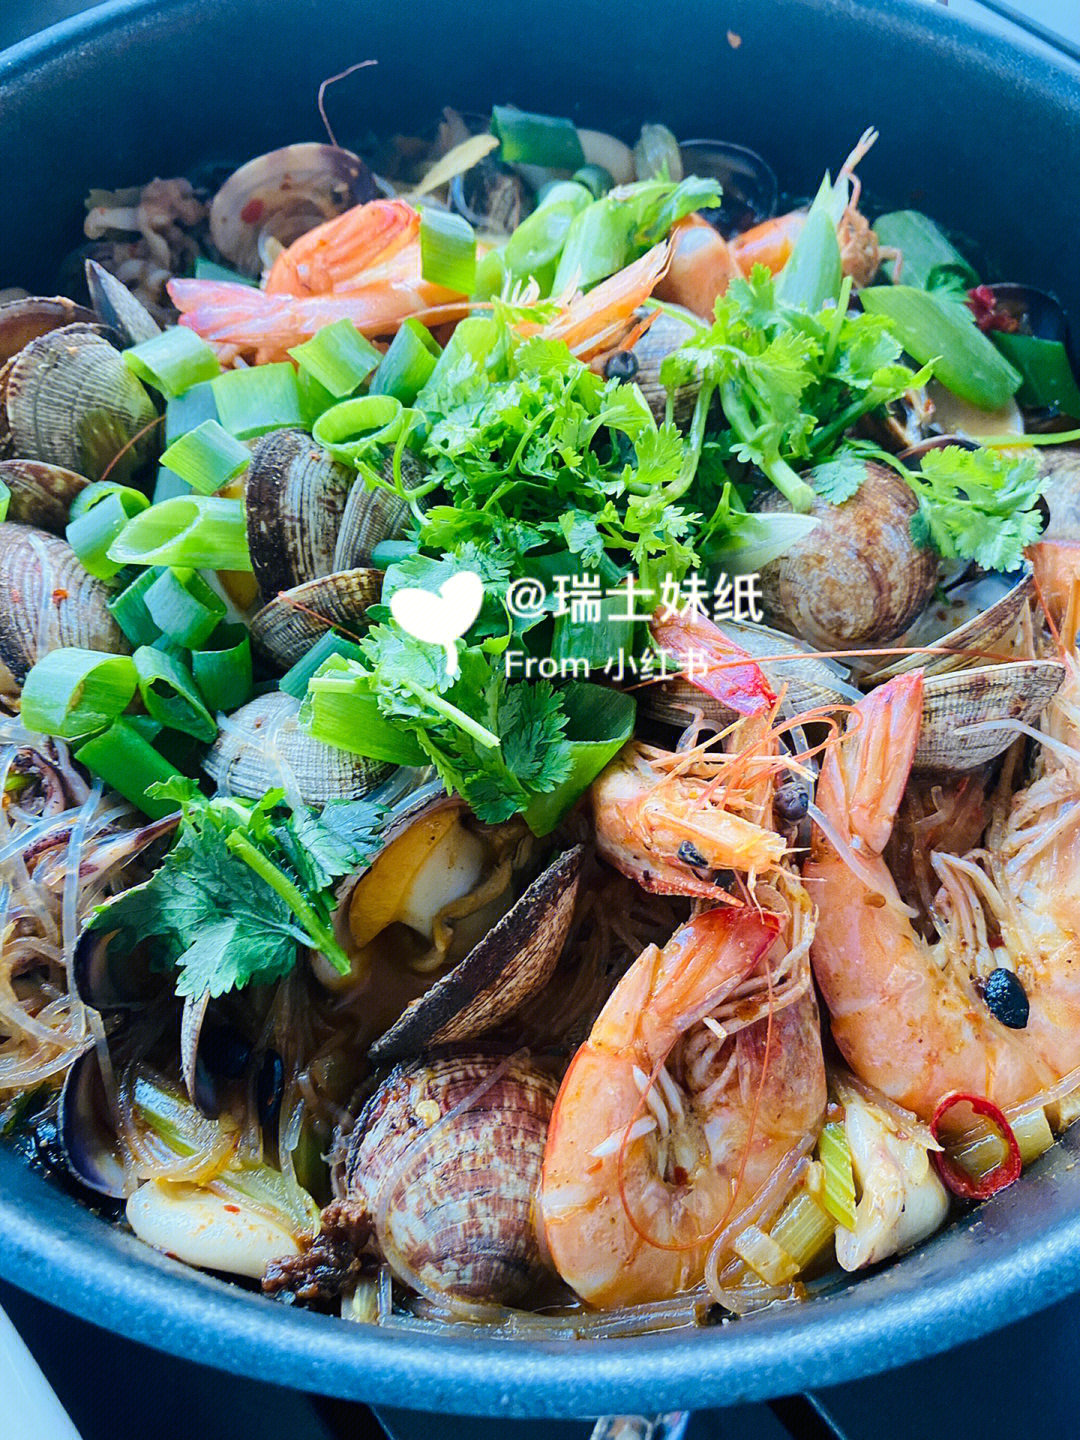 海鲜粉丝锅,青椒肉丝,鸡肉番茄沙拉,爆炒小龙虾,冬瓜海带鸡肉丸子汤